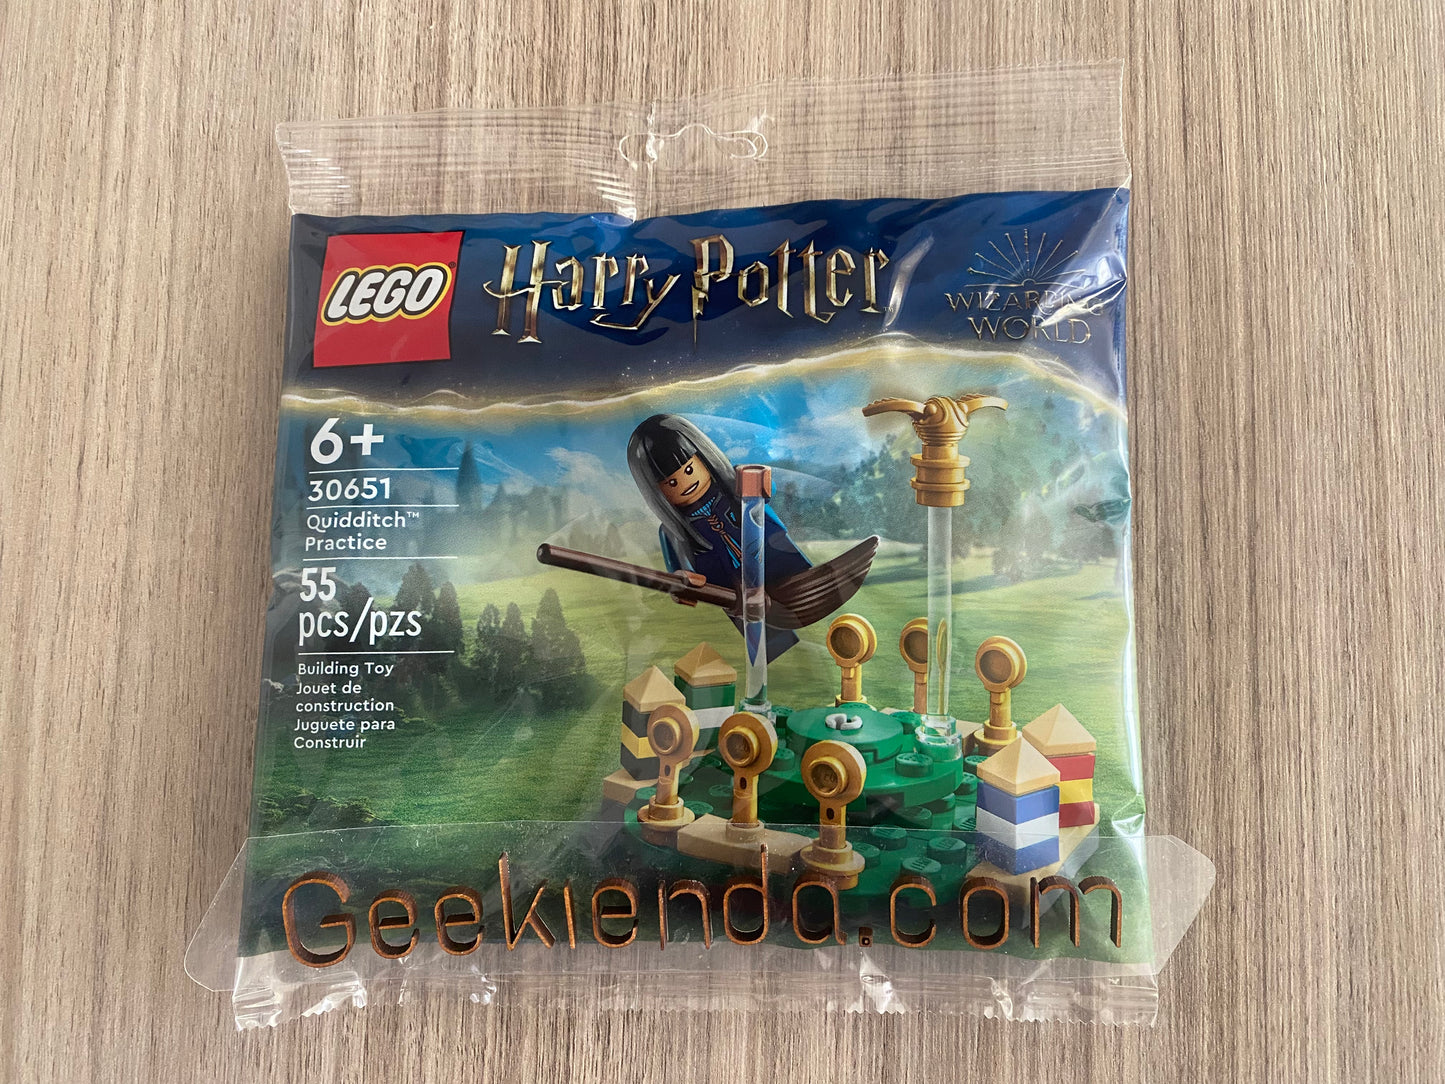 . Geekienda - LEGO SET 30651 Entrenamiento de Quidditch™  - LEGO Harry potter